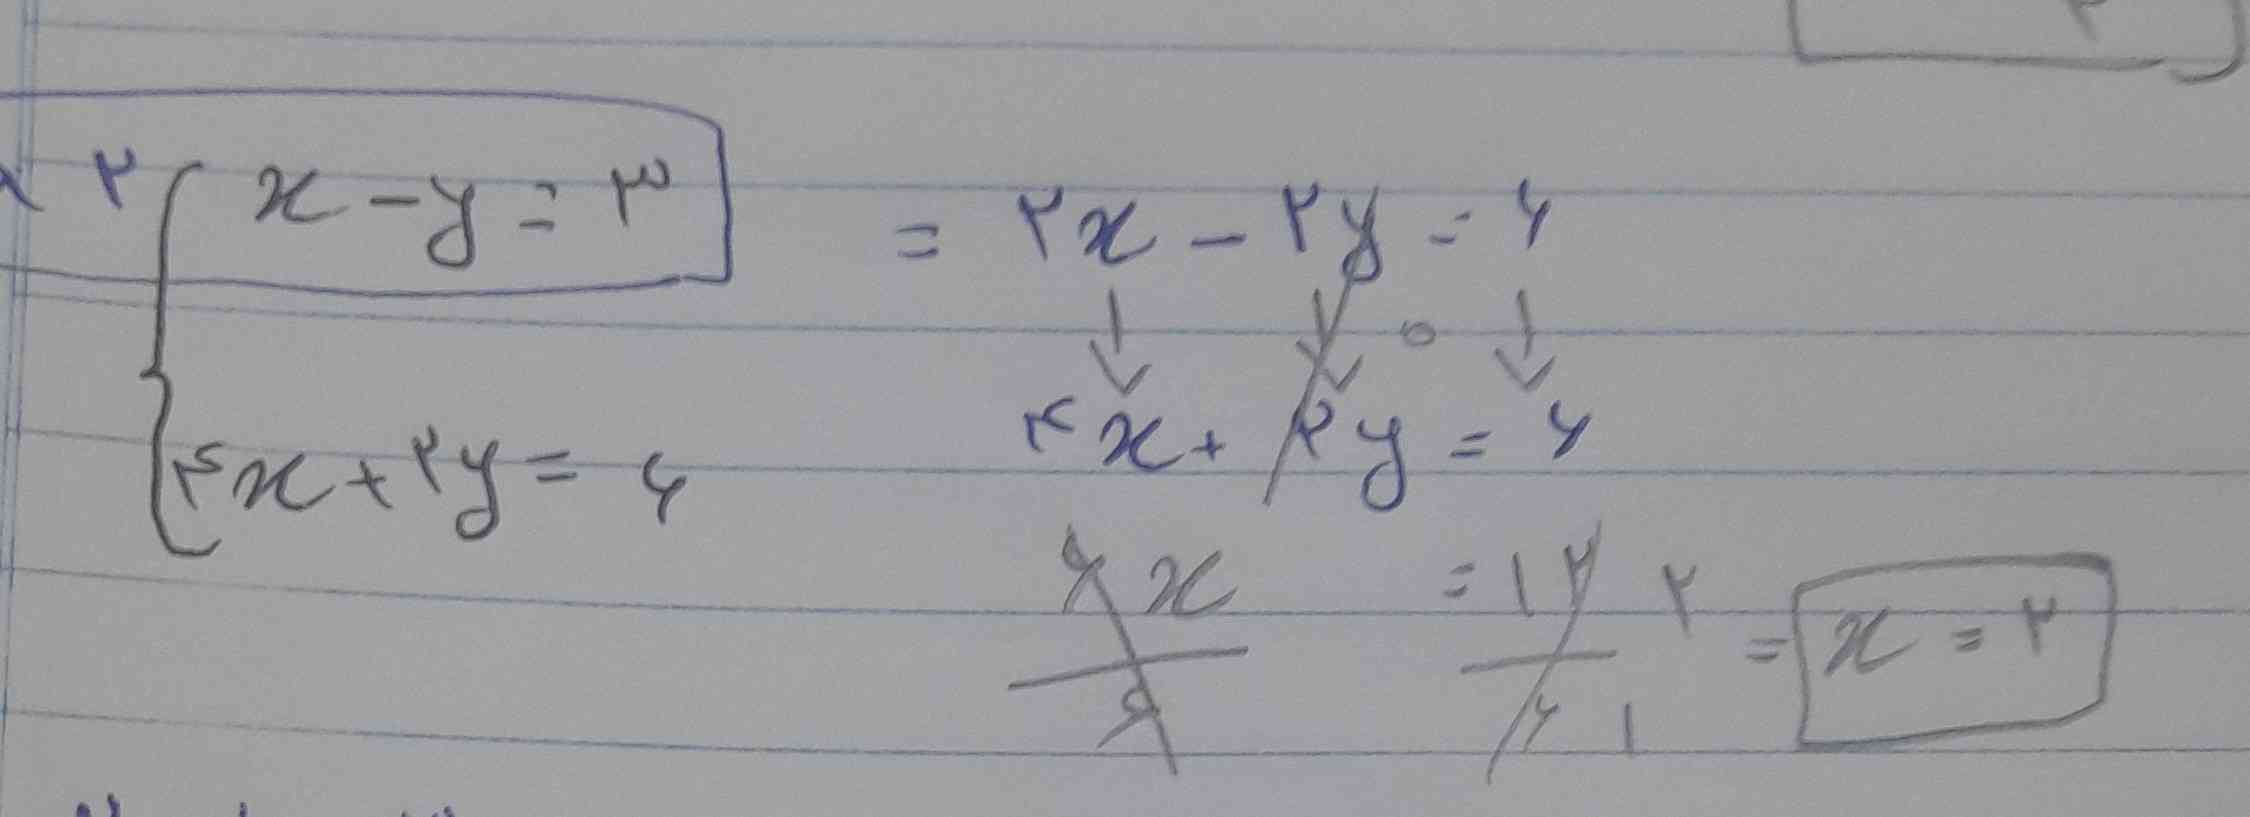 بچه ها یه سوال داشتم اینجا وقتی x رو به دست آوردیم مثلا توی اون بالایی اگ خواستم جای گذاری کنم توی قسمتی که ۲ رو ضربش کردم جواب بدست اومد جای گذاری کنم 2x-2y=6 یا توی همون قسمت اولشx-y=3